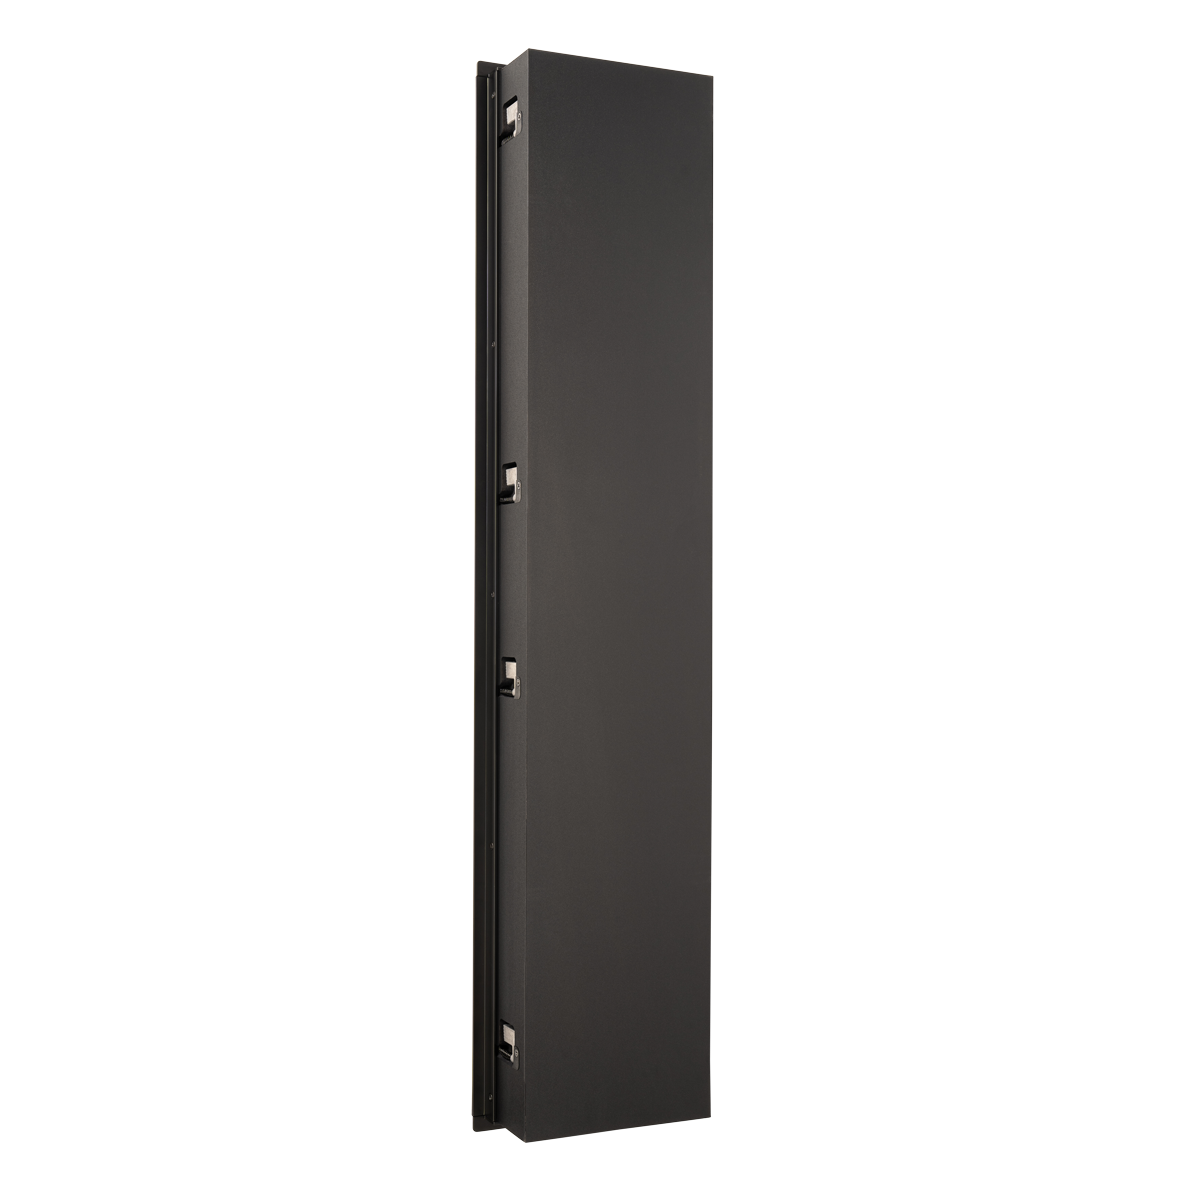 Paradigm CI Elite E5 LCR v2, į sieną montuojama garso kolonėlė (montavimo gylis: 9.8 cm.)